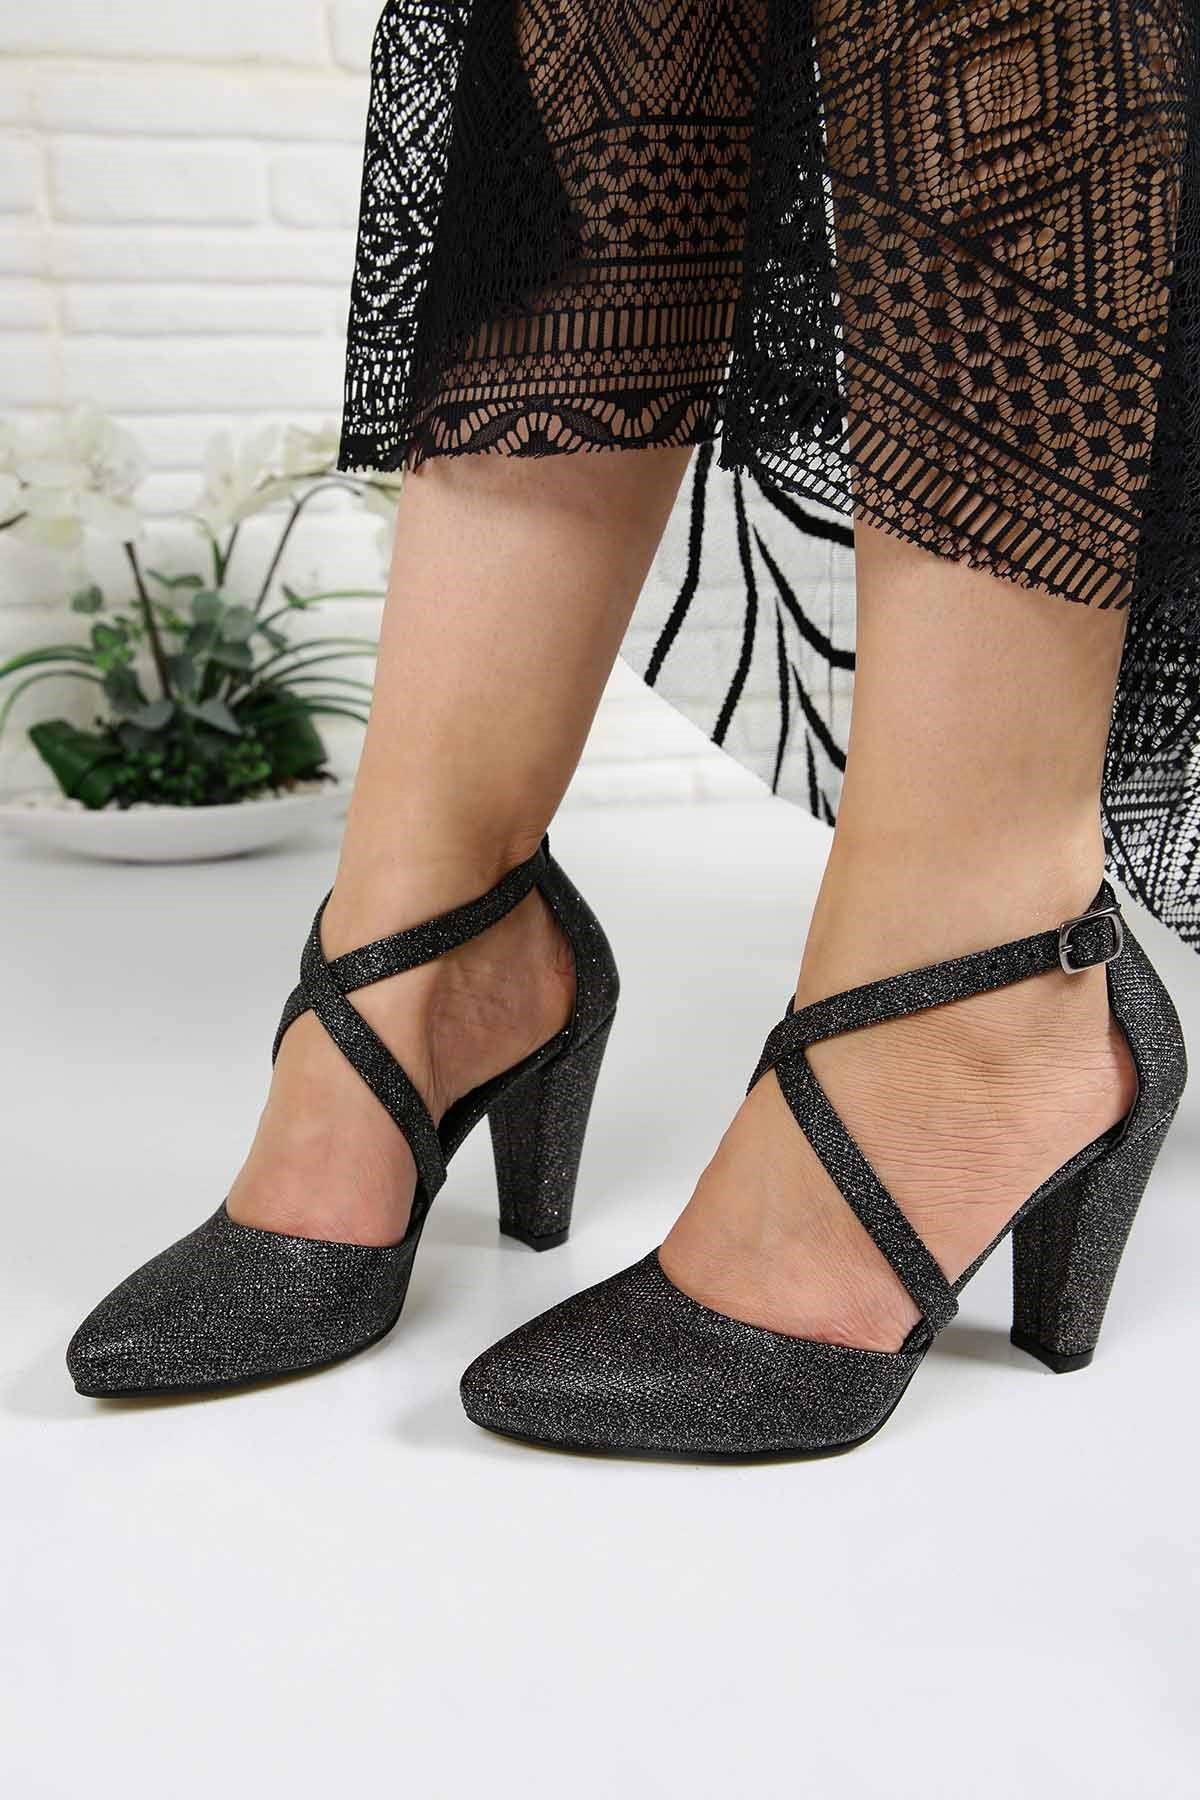 Bayan Çapraz Bantlı Topuklu Ayakkabı - 5998 SİYAH SİMLİ